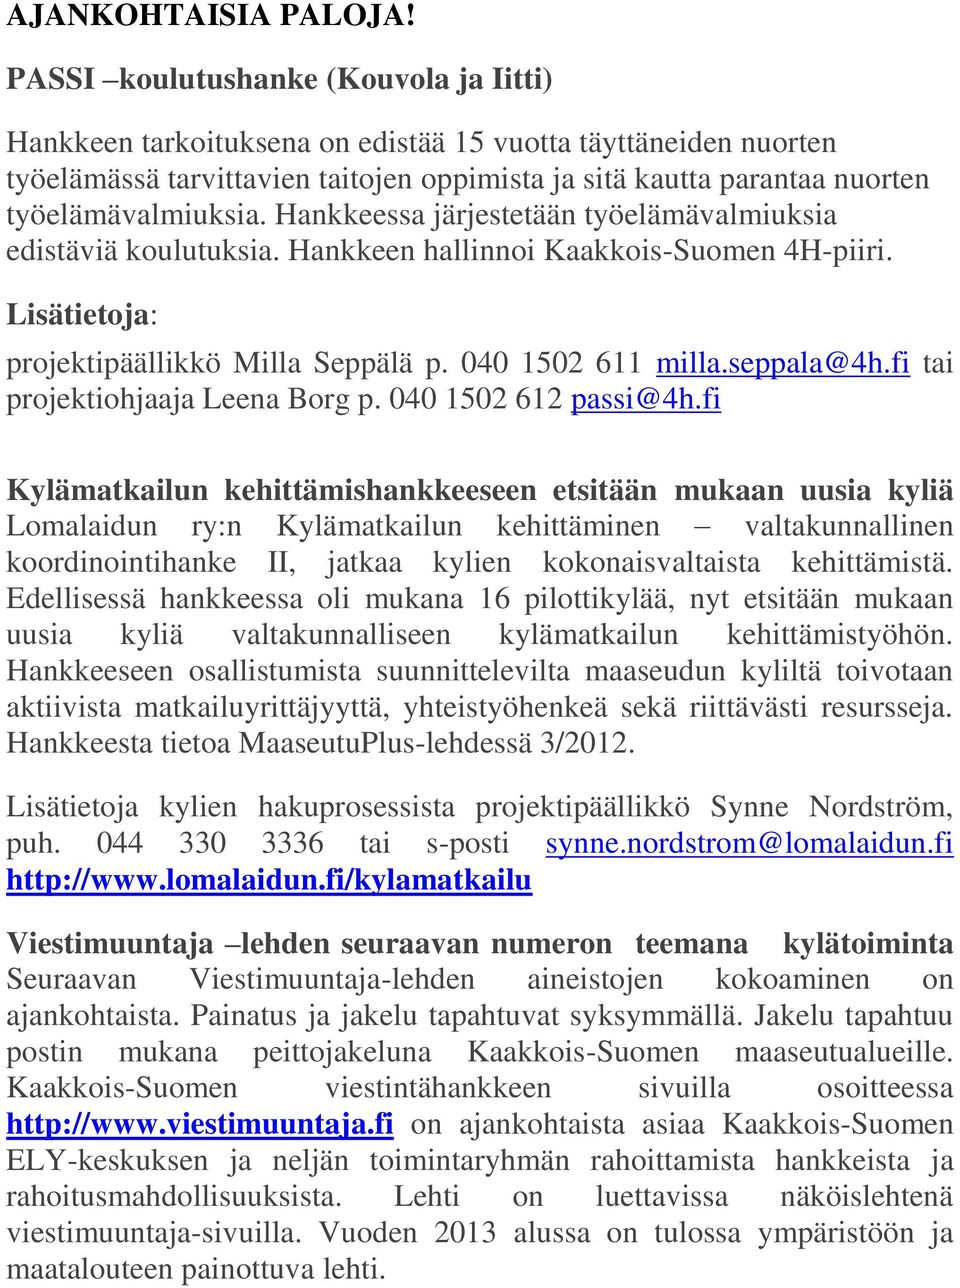 Hankkeessa järjestetään työelämävalmiuksia edistäviä koulutuksia. Hankkeen hallinnoi Kaakkois-Suomen 4H-piiri. Lisätietoja: projektipäällikkö Milla Seppälä p. 040 1502 611 milla.seppala@4h.